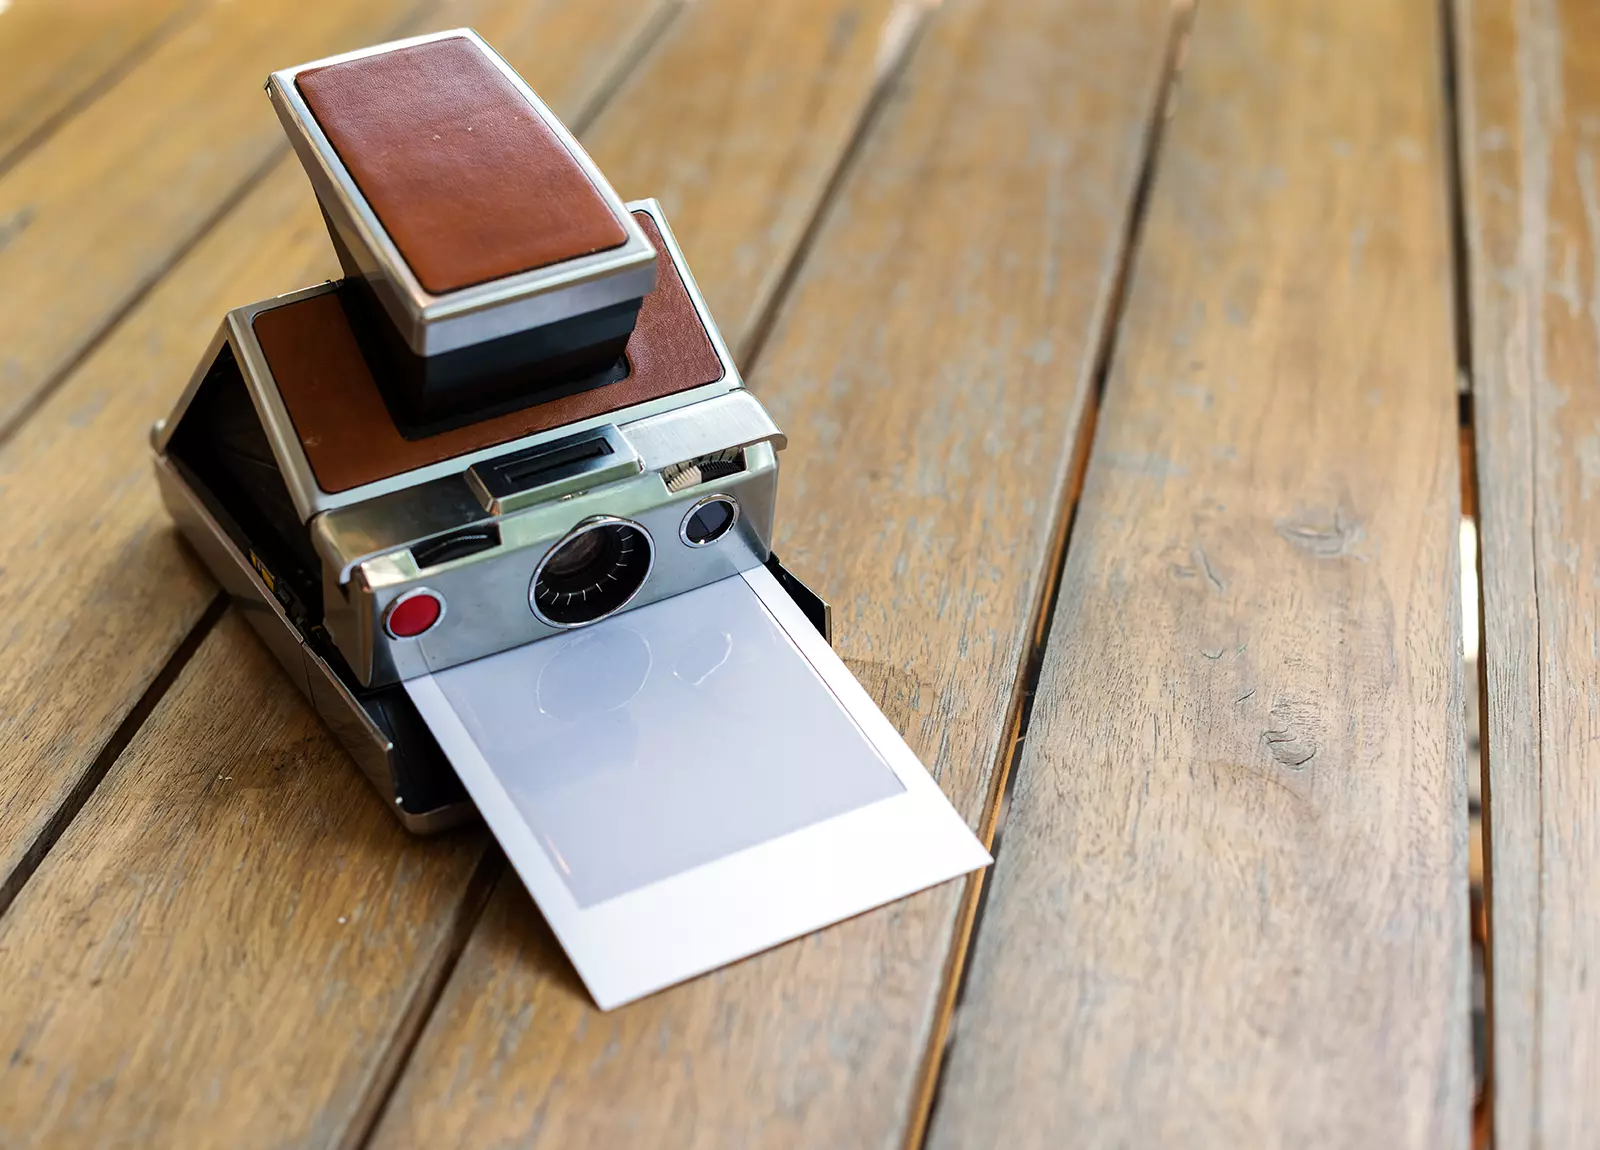 Cámara instantánea revelando una foto mostrando la Instagif, una cámara DIY para “imprimir” gifs.